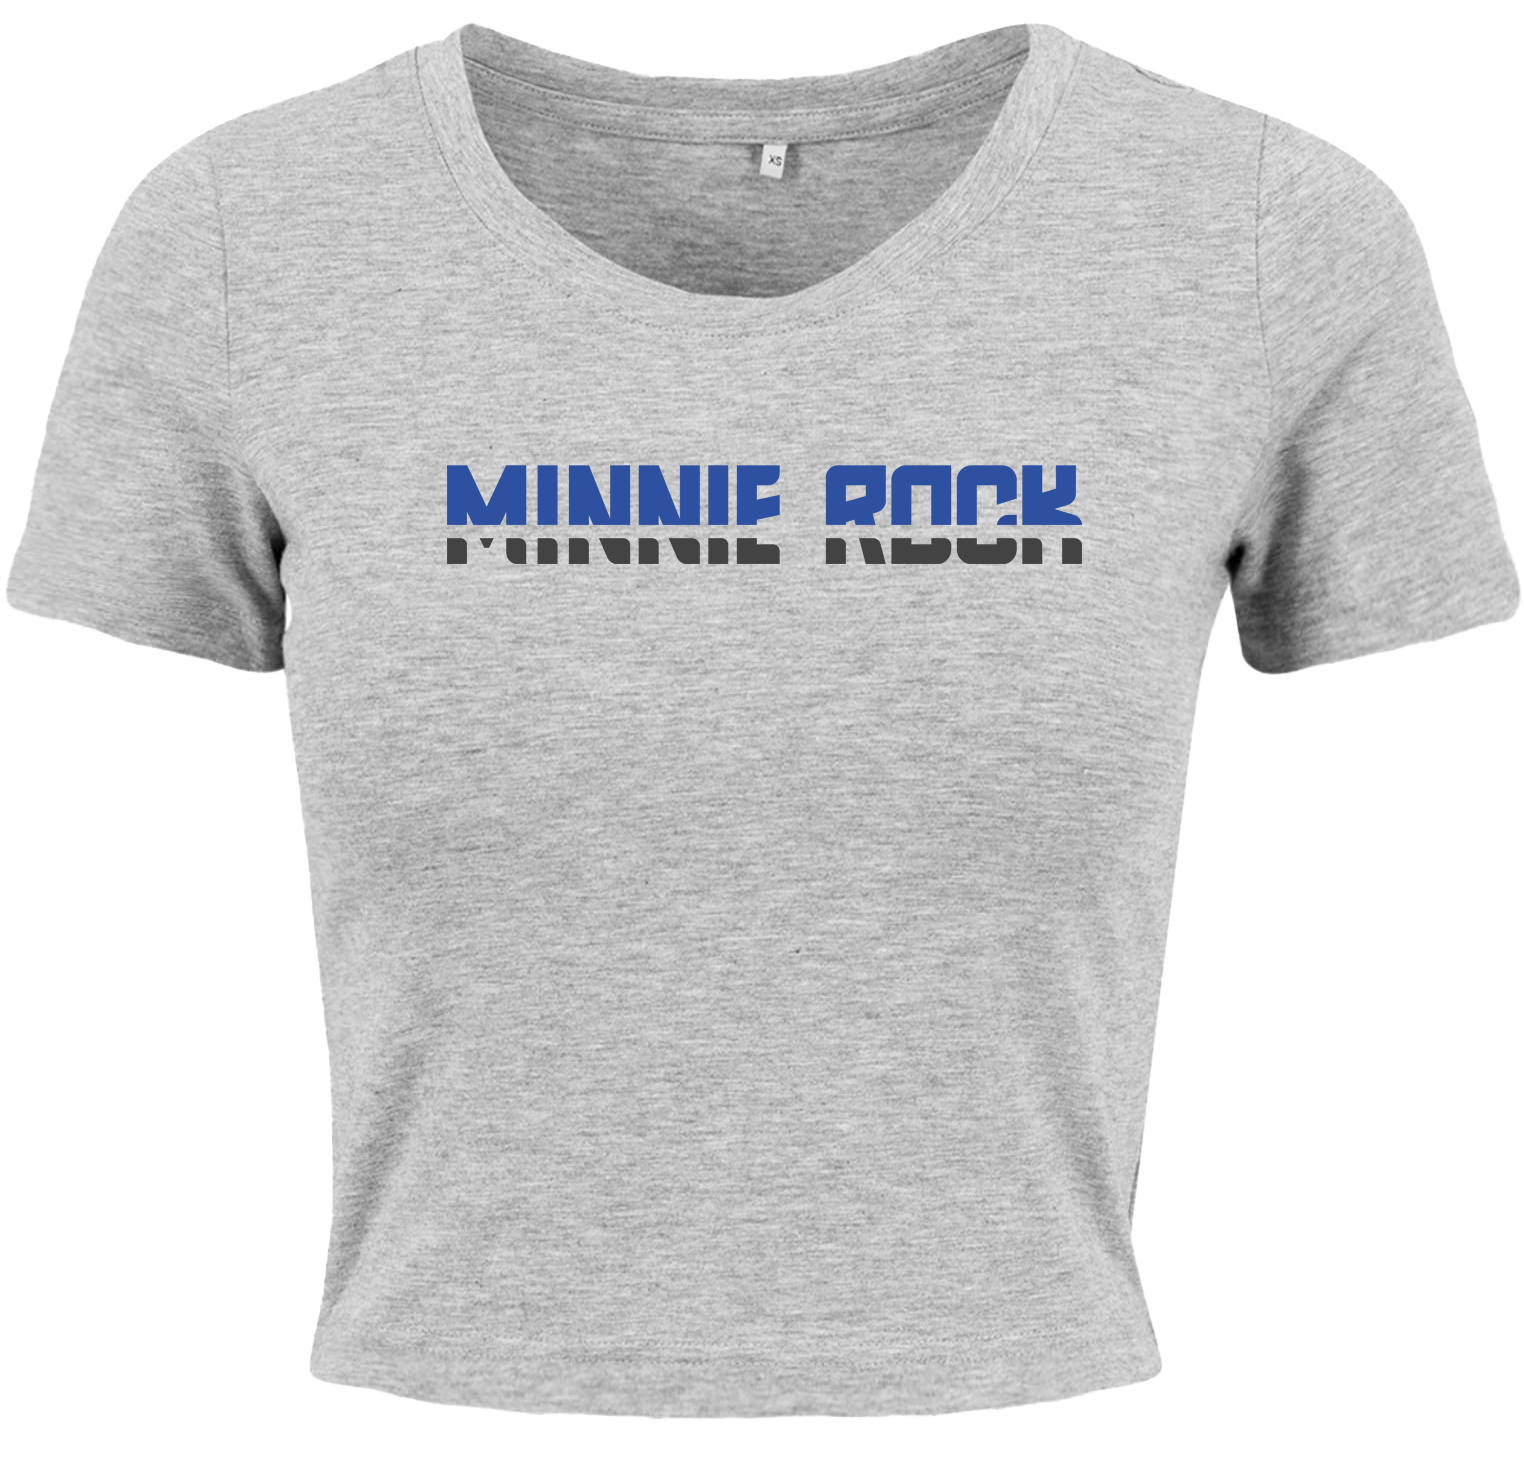 minnie rock - Schriftzug Girl Crop Shirt [grau]